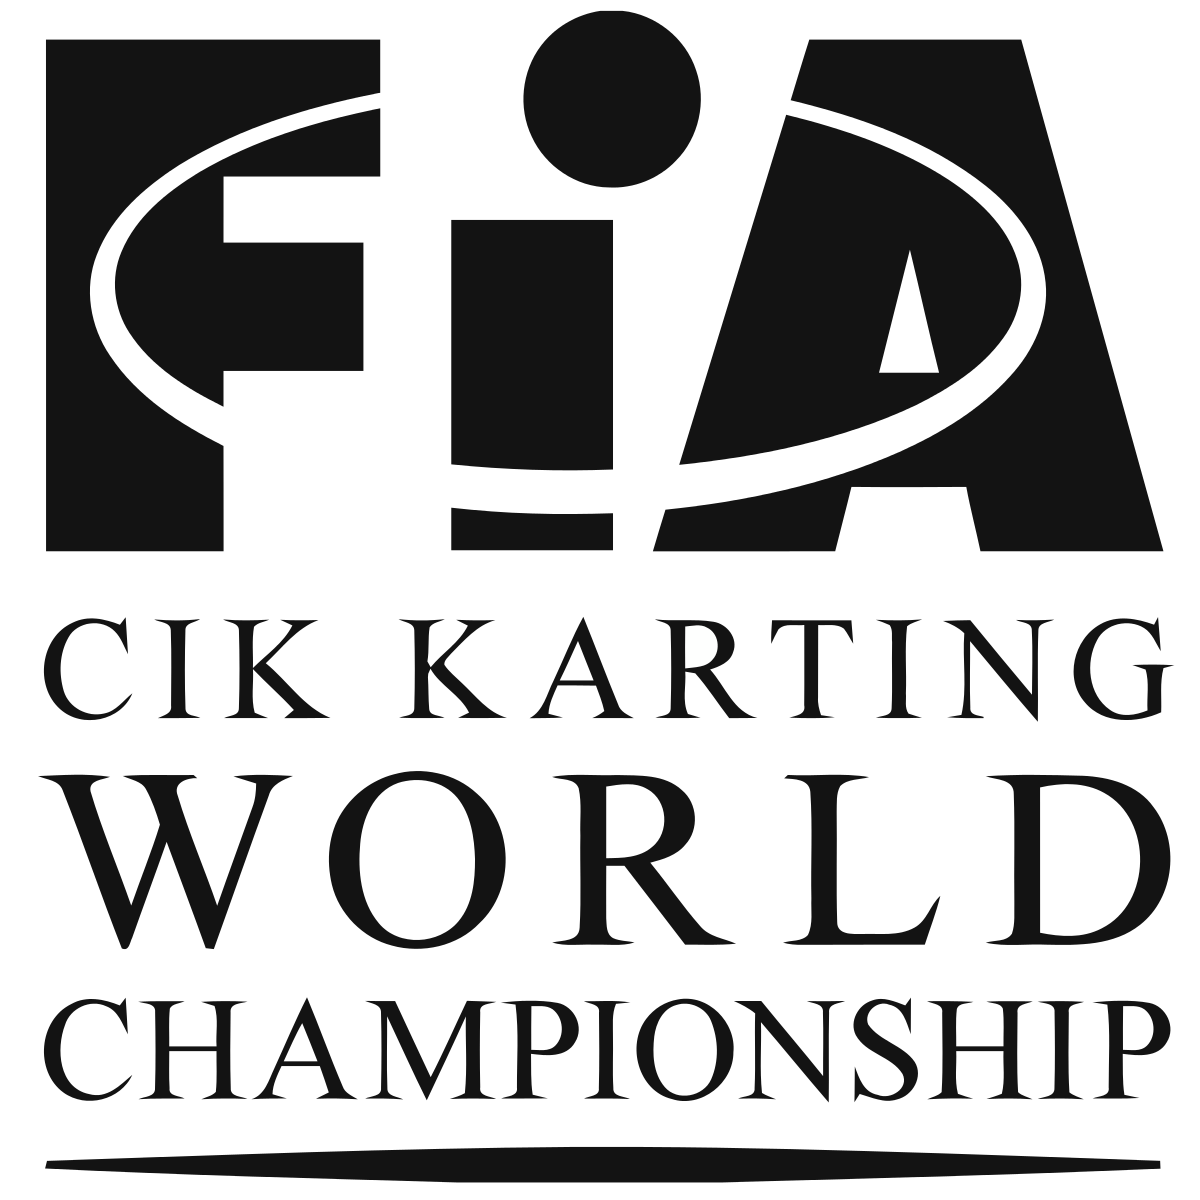 2023 International Championship - Wikipedia